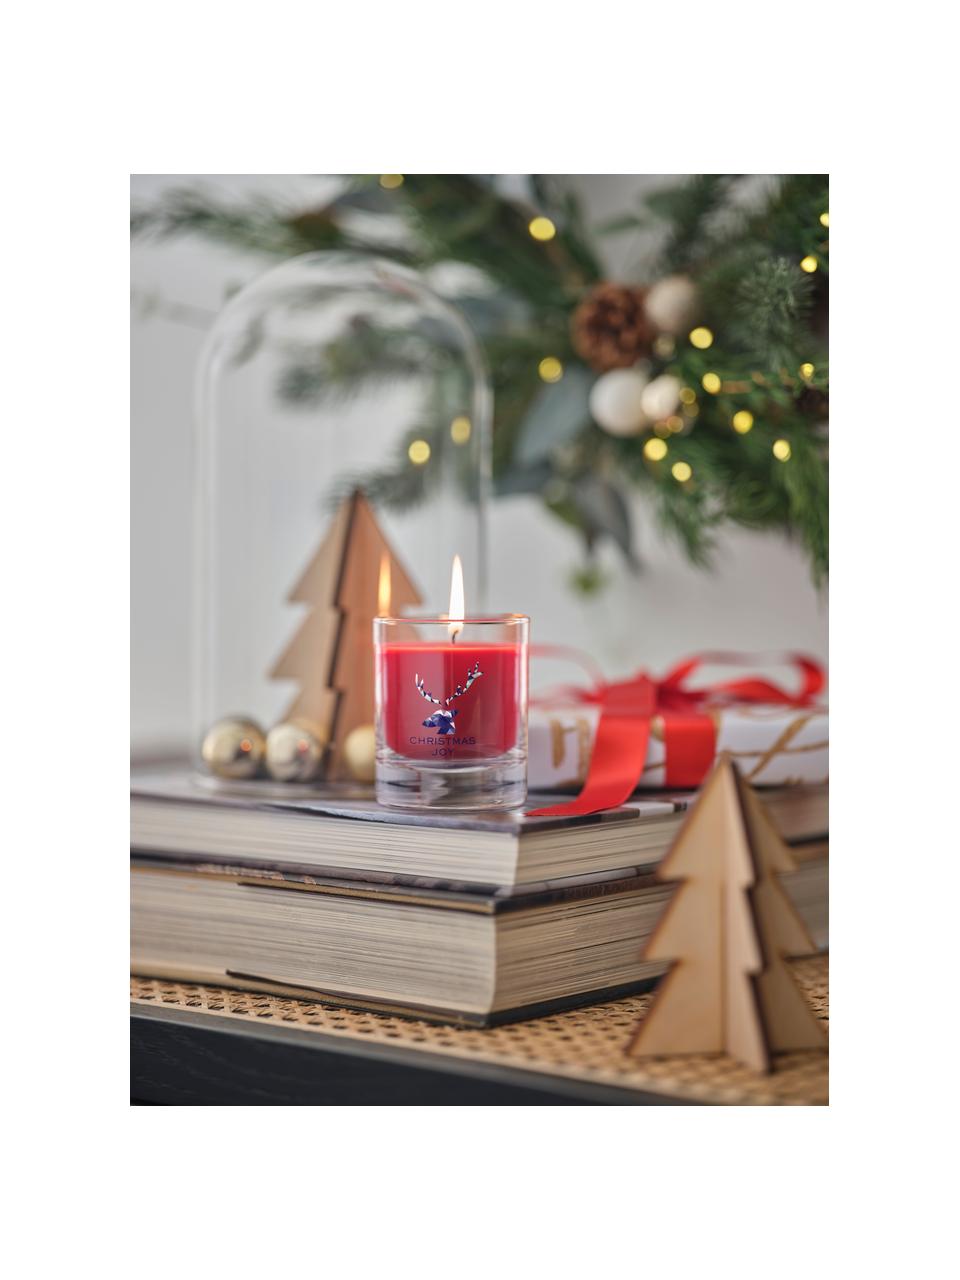 Vianočná sviečka Christmas Joy (škorica. klinček a sladká vanilka), Škorica, klinček a sladká vanilka